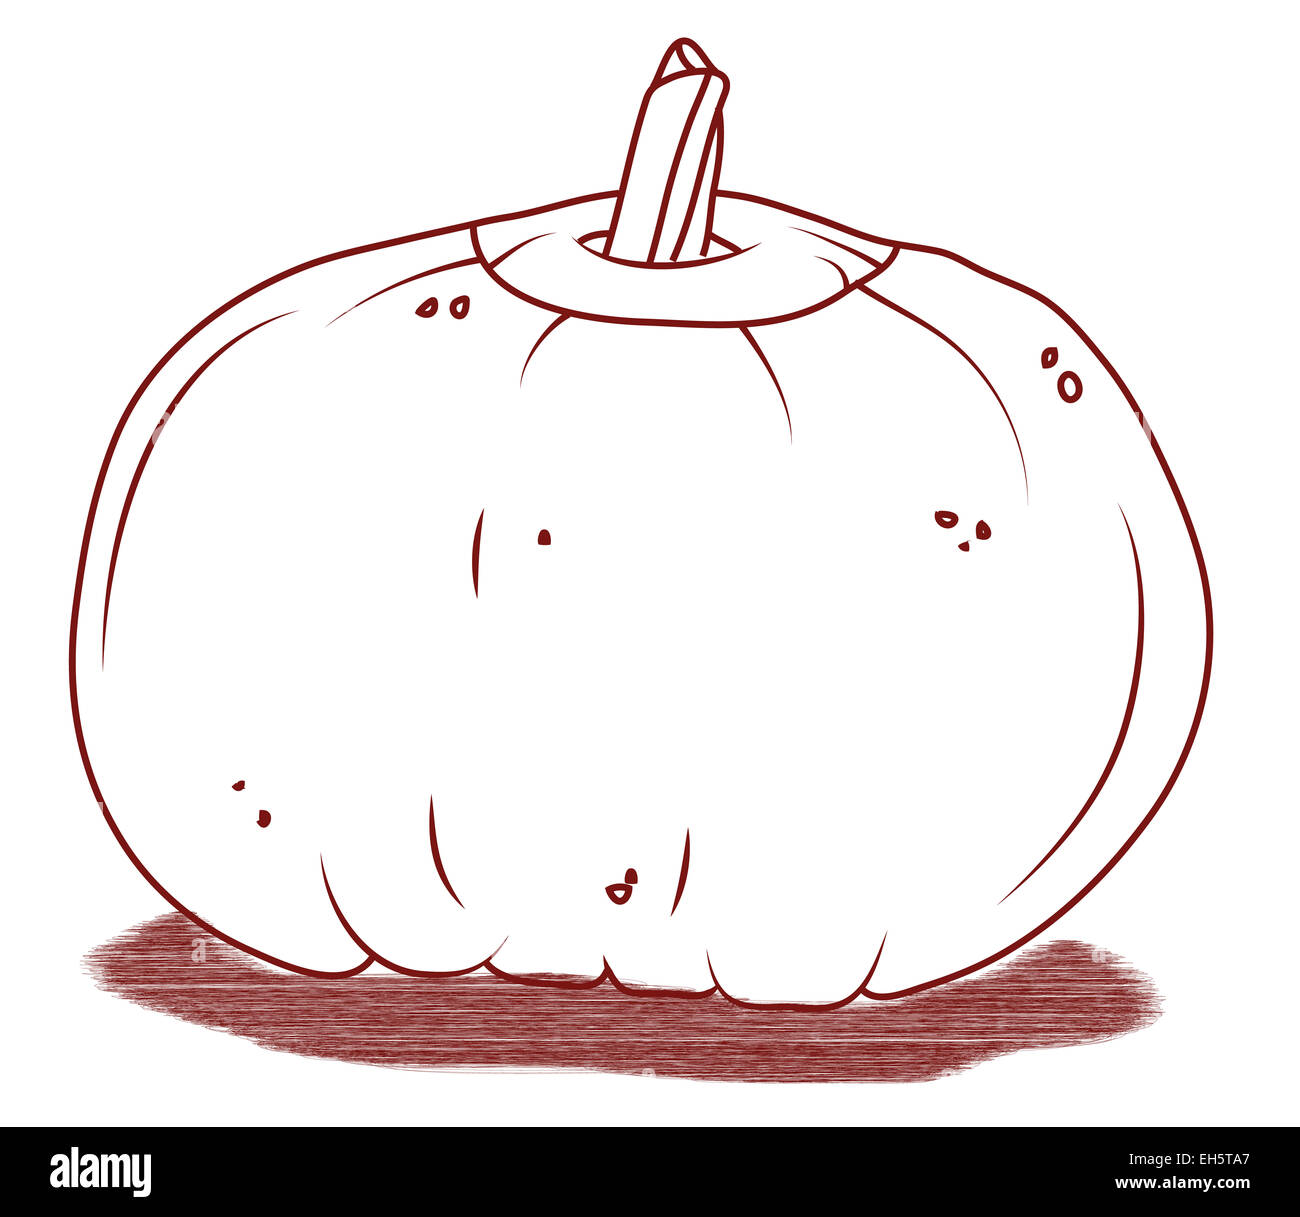 Pumpkin artistic Halloween illustration isolated. On white Stock Photo